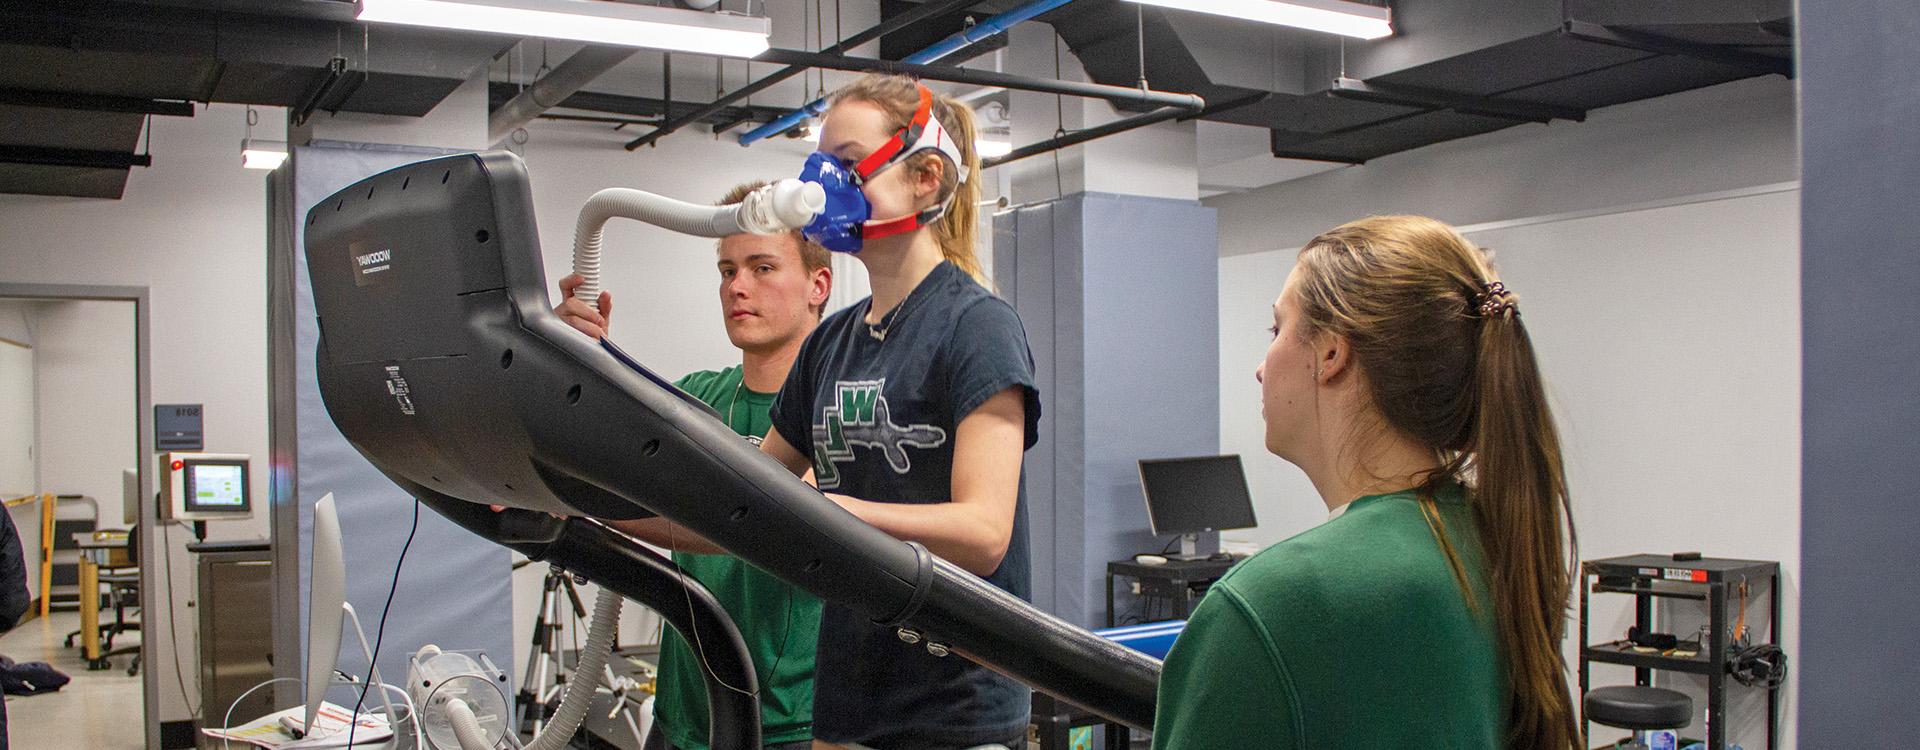 WLC学生在体育和运动科学实验室